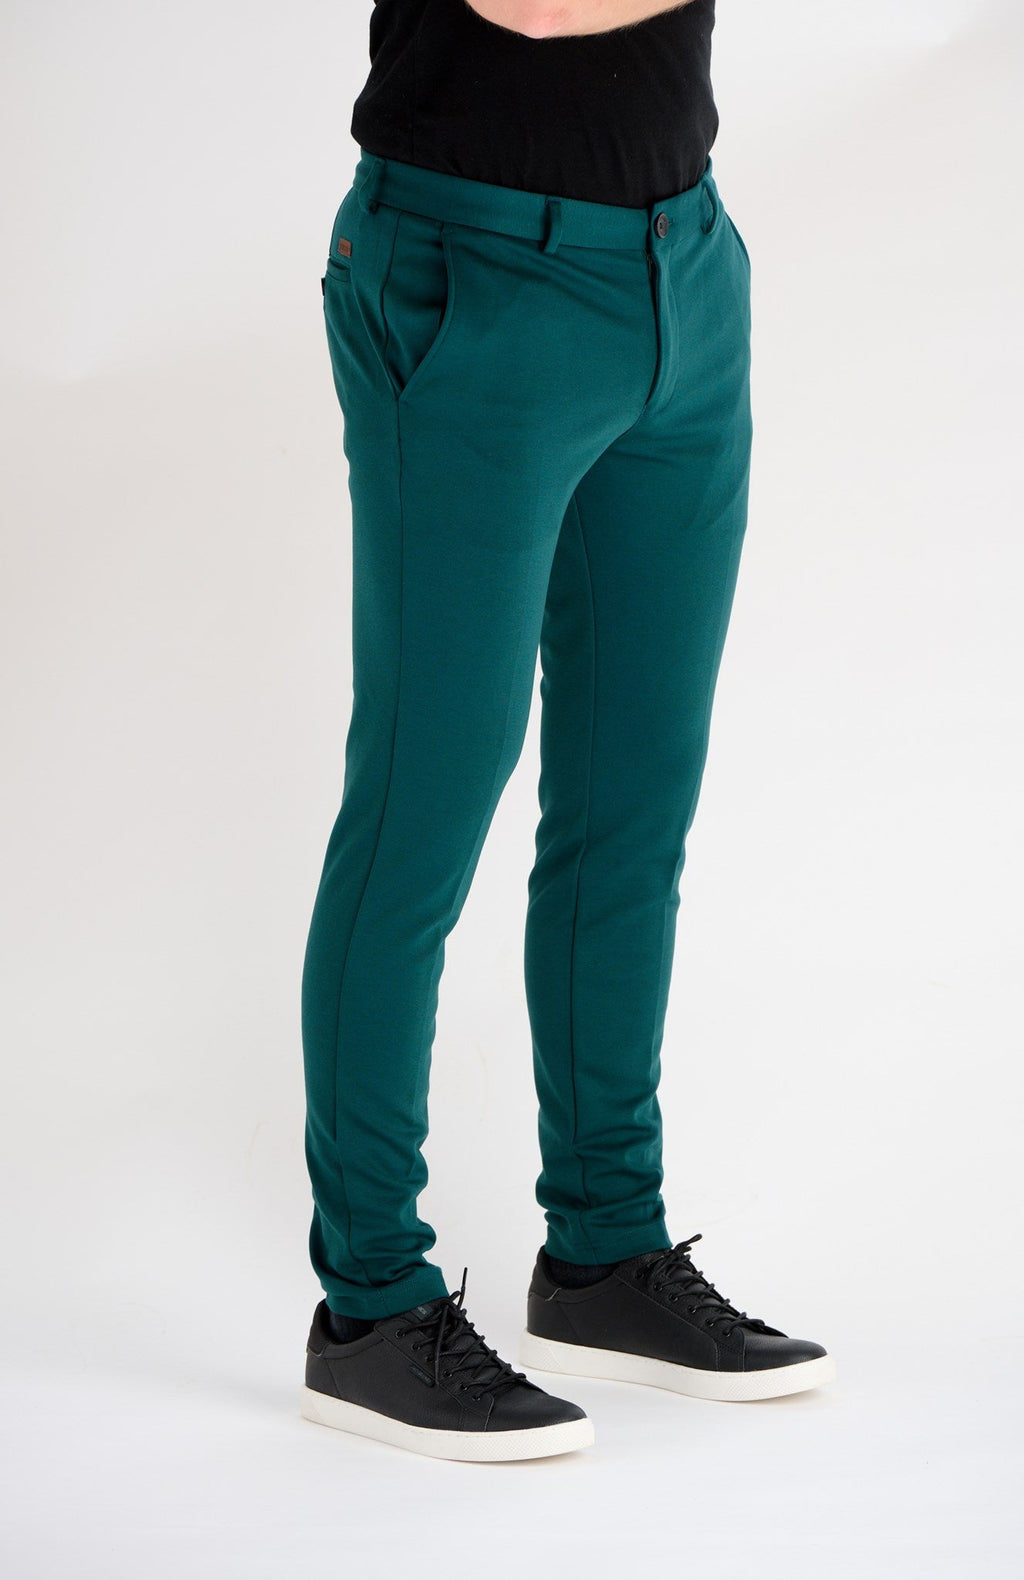 原始性能裤子 - 绿色